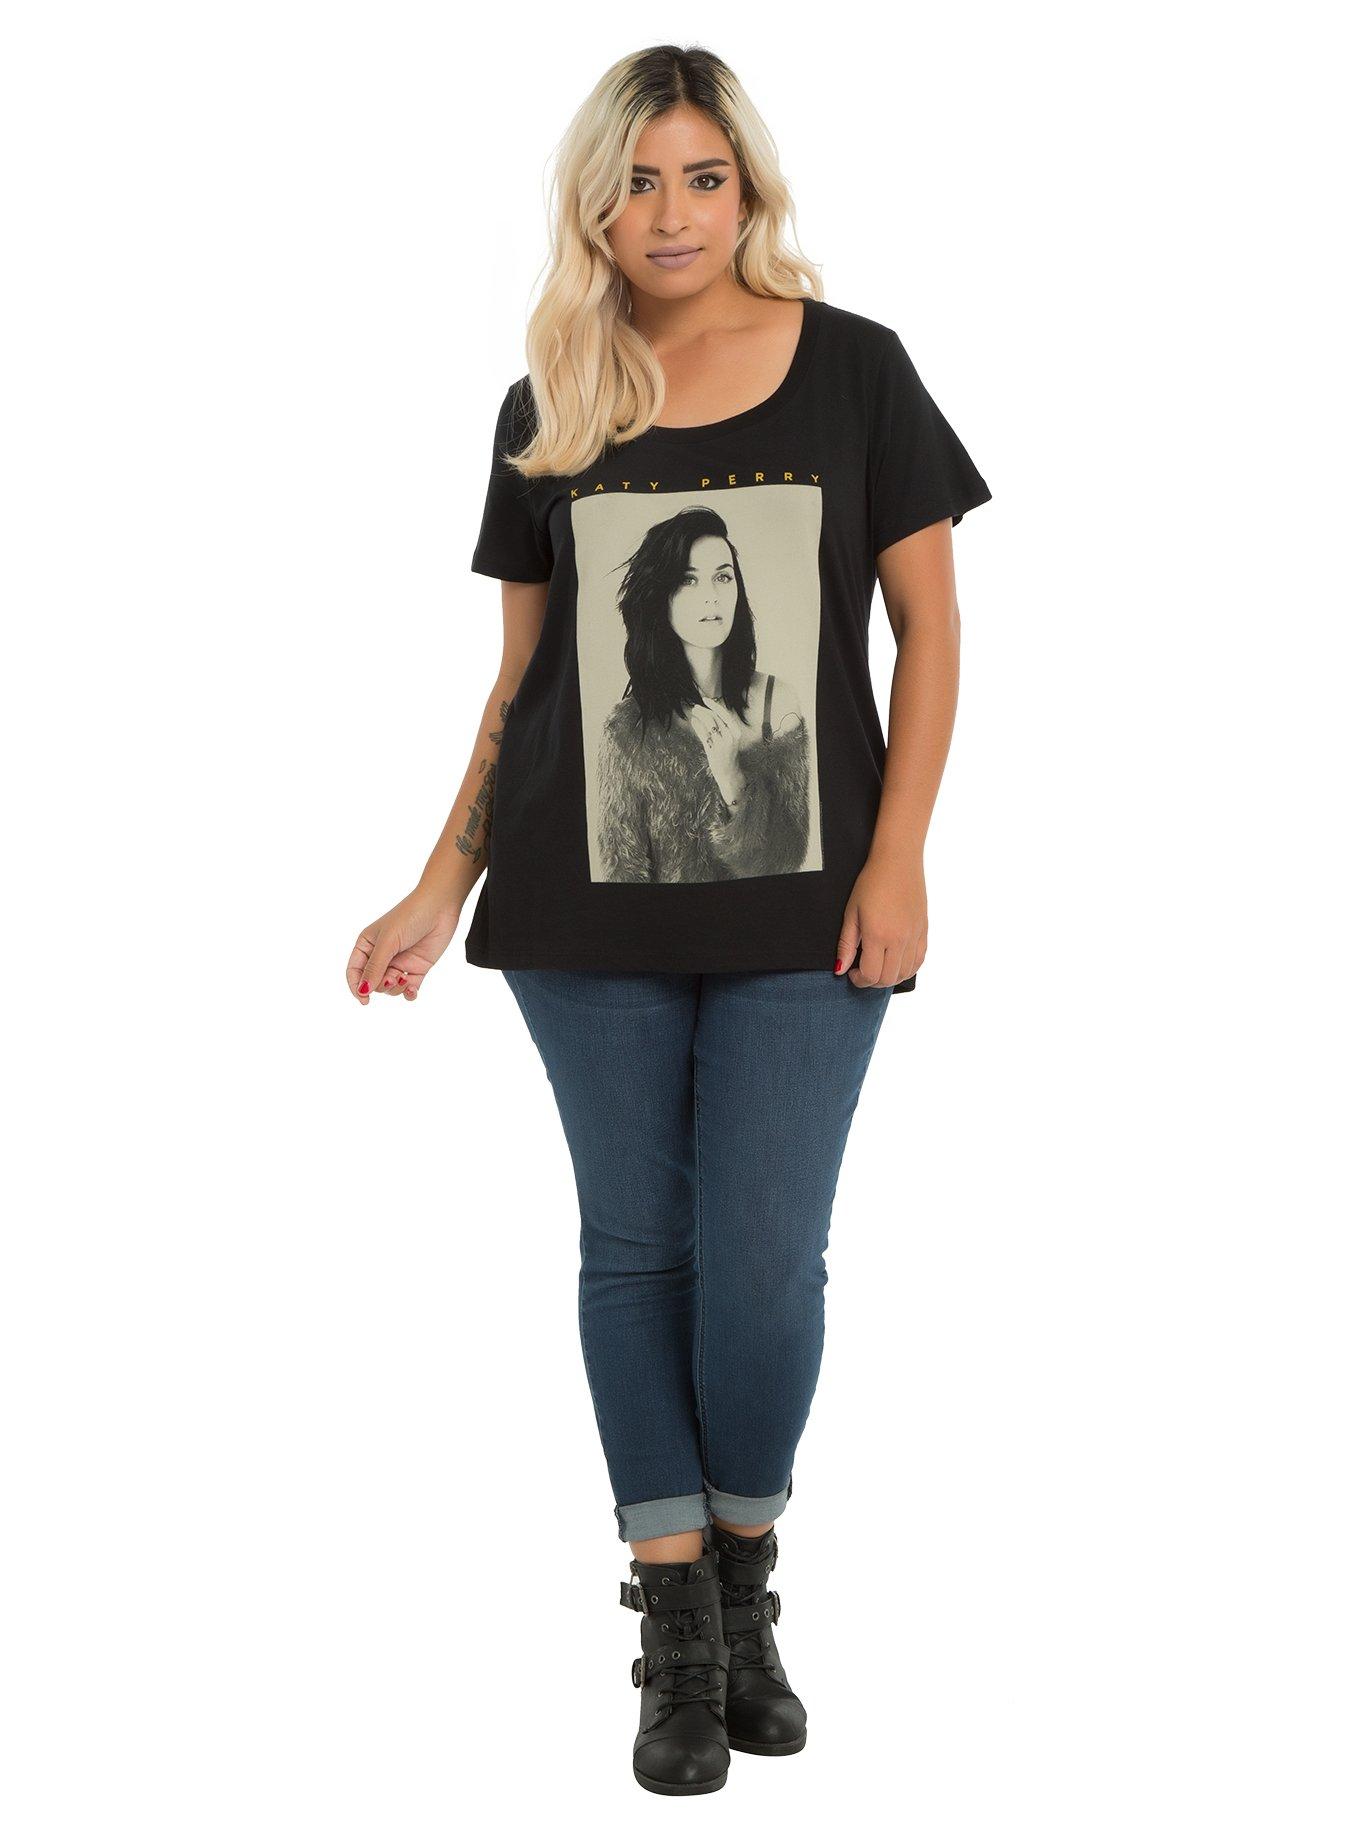 Katy Perry Black & White Photo T-Shirt Plus Size, , alternate